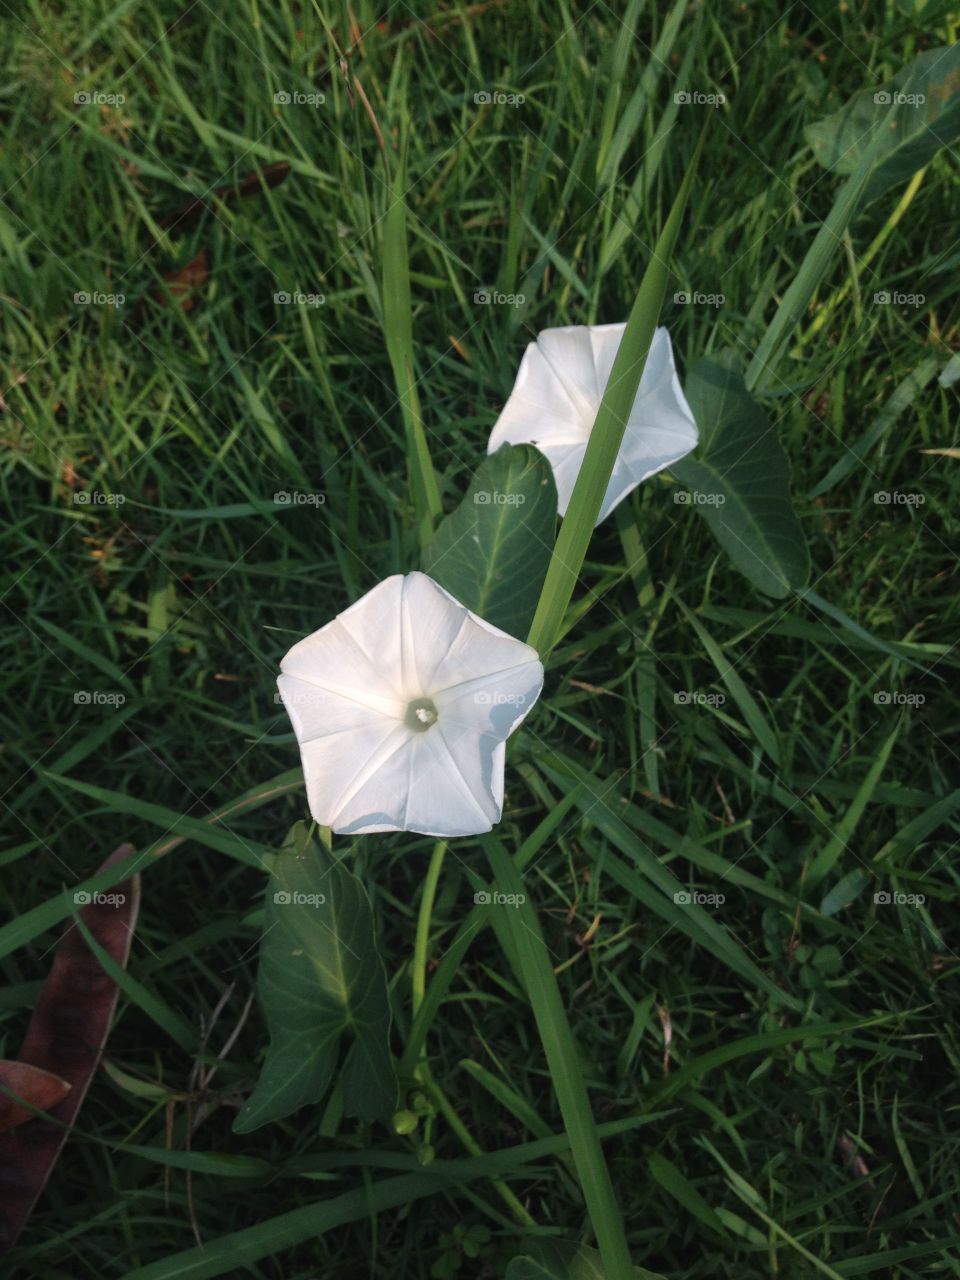 White morning glory flower on grass.